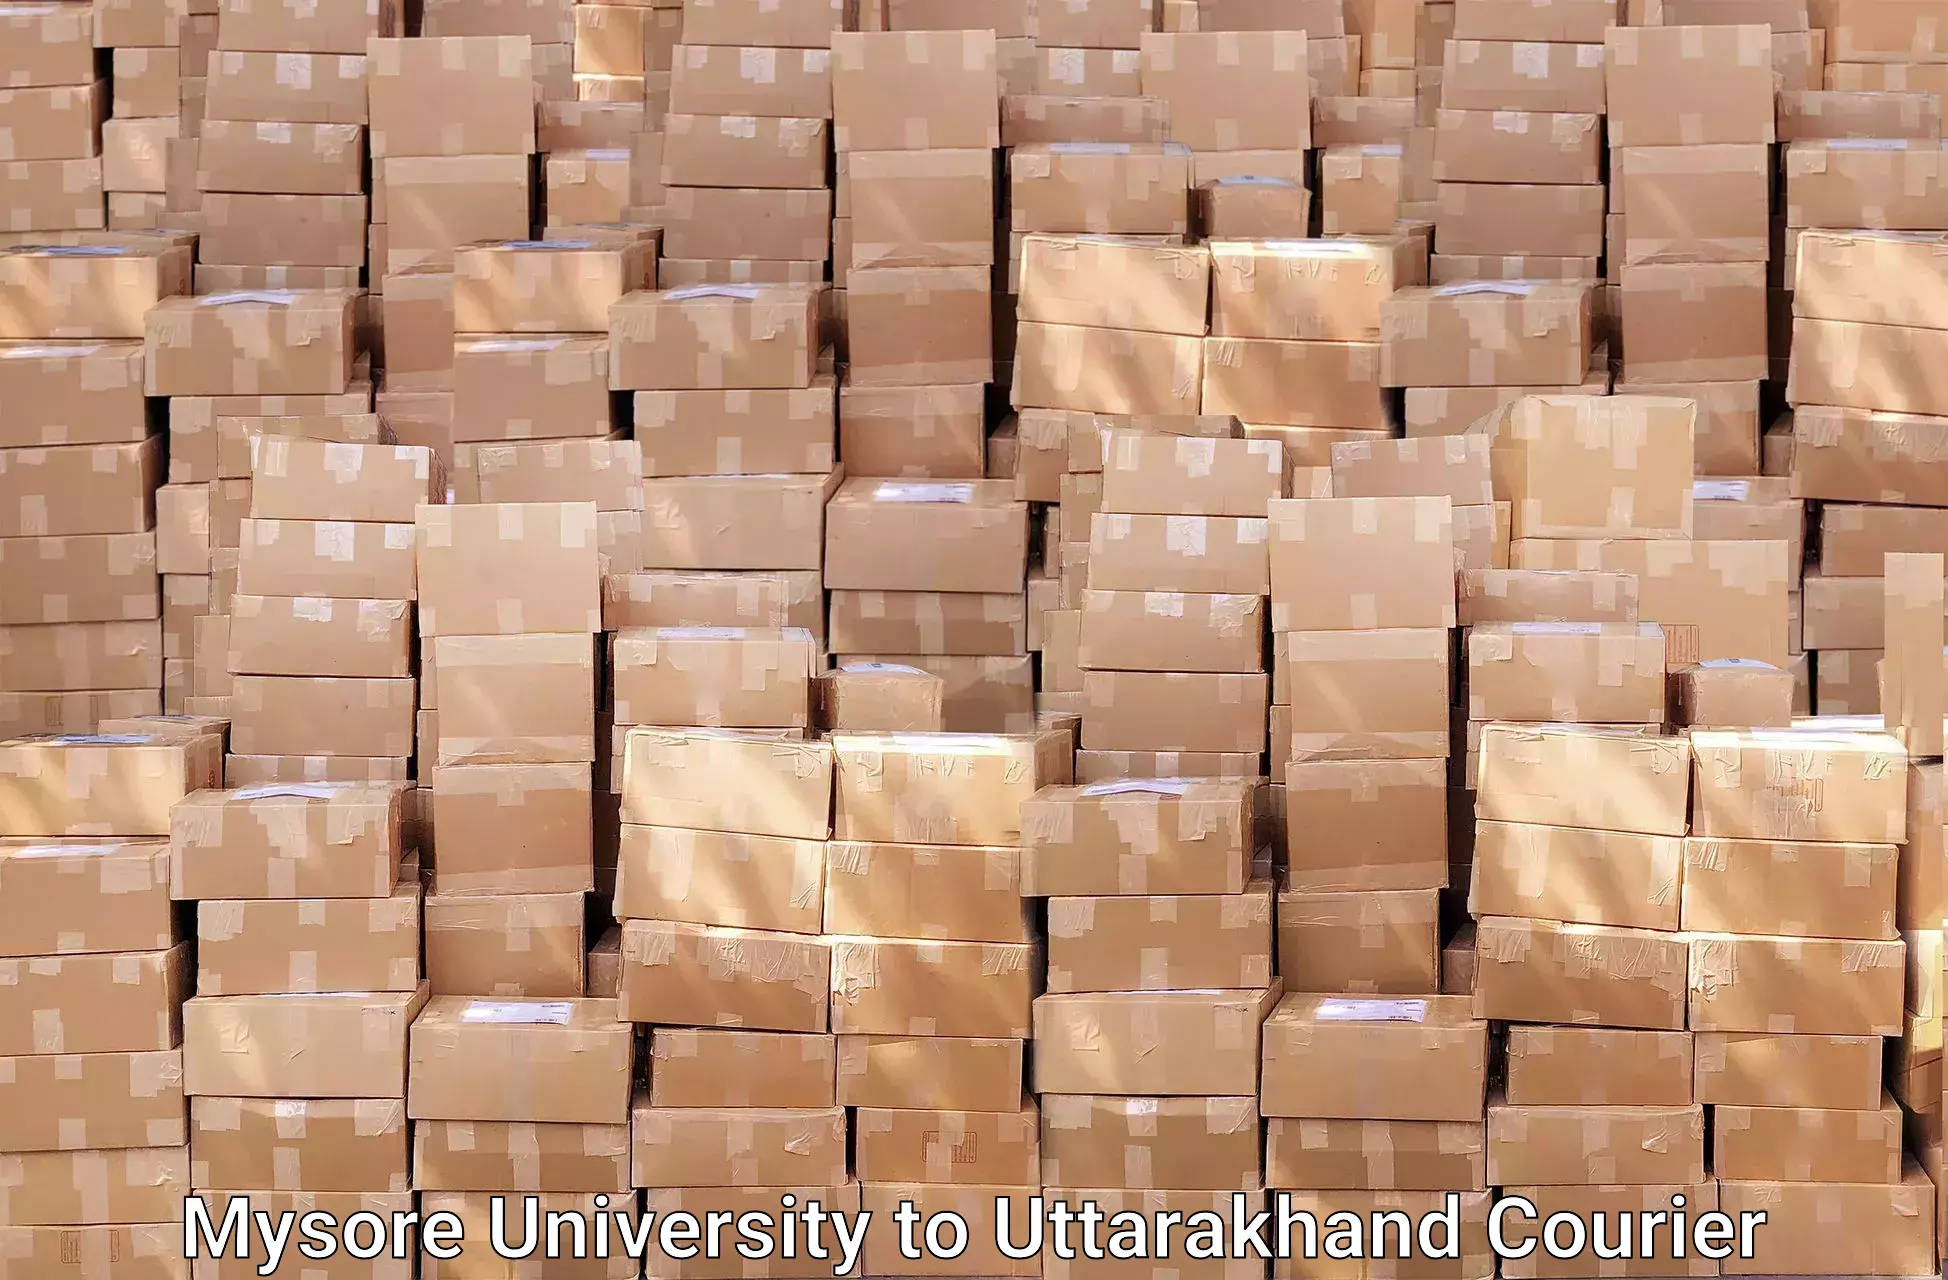 Furniture moving assistance Mysore University to Uttarakhand